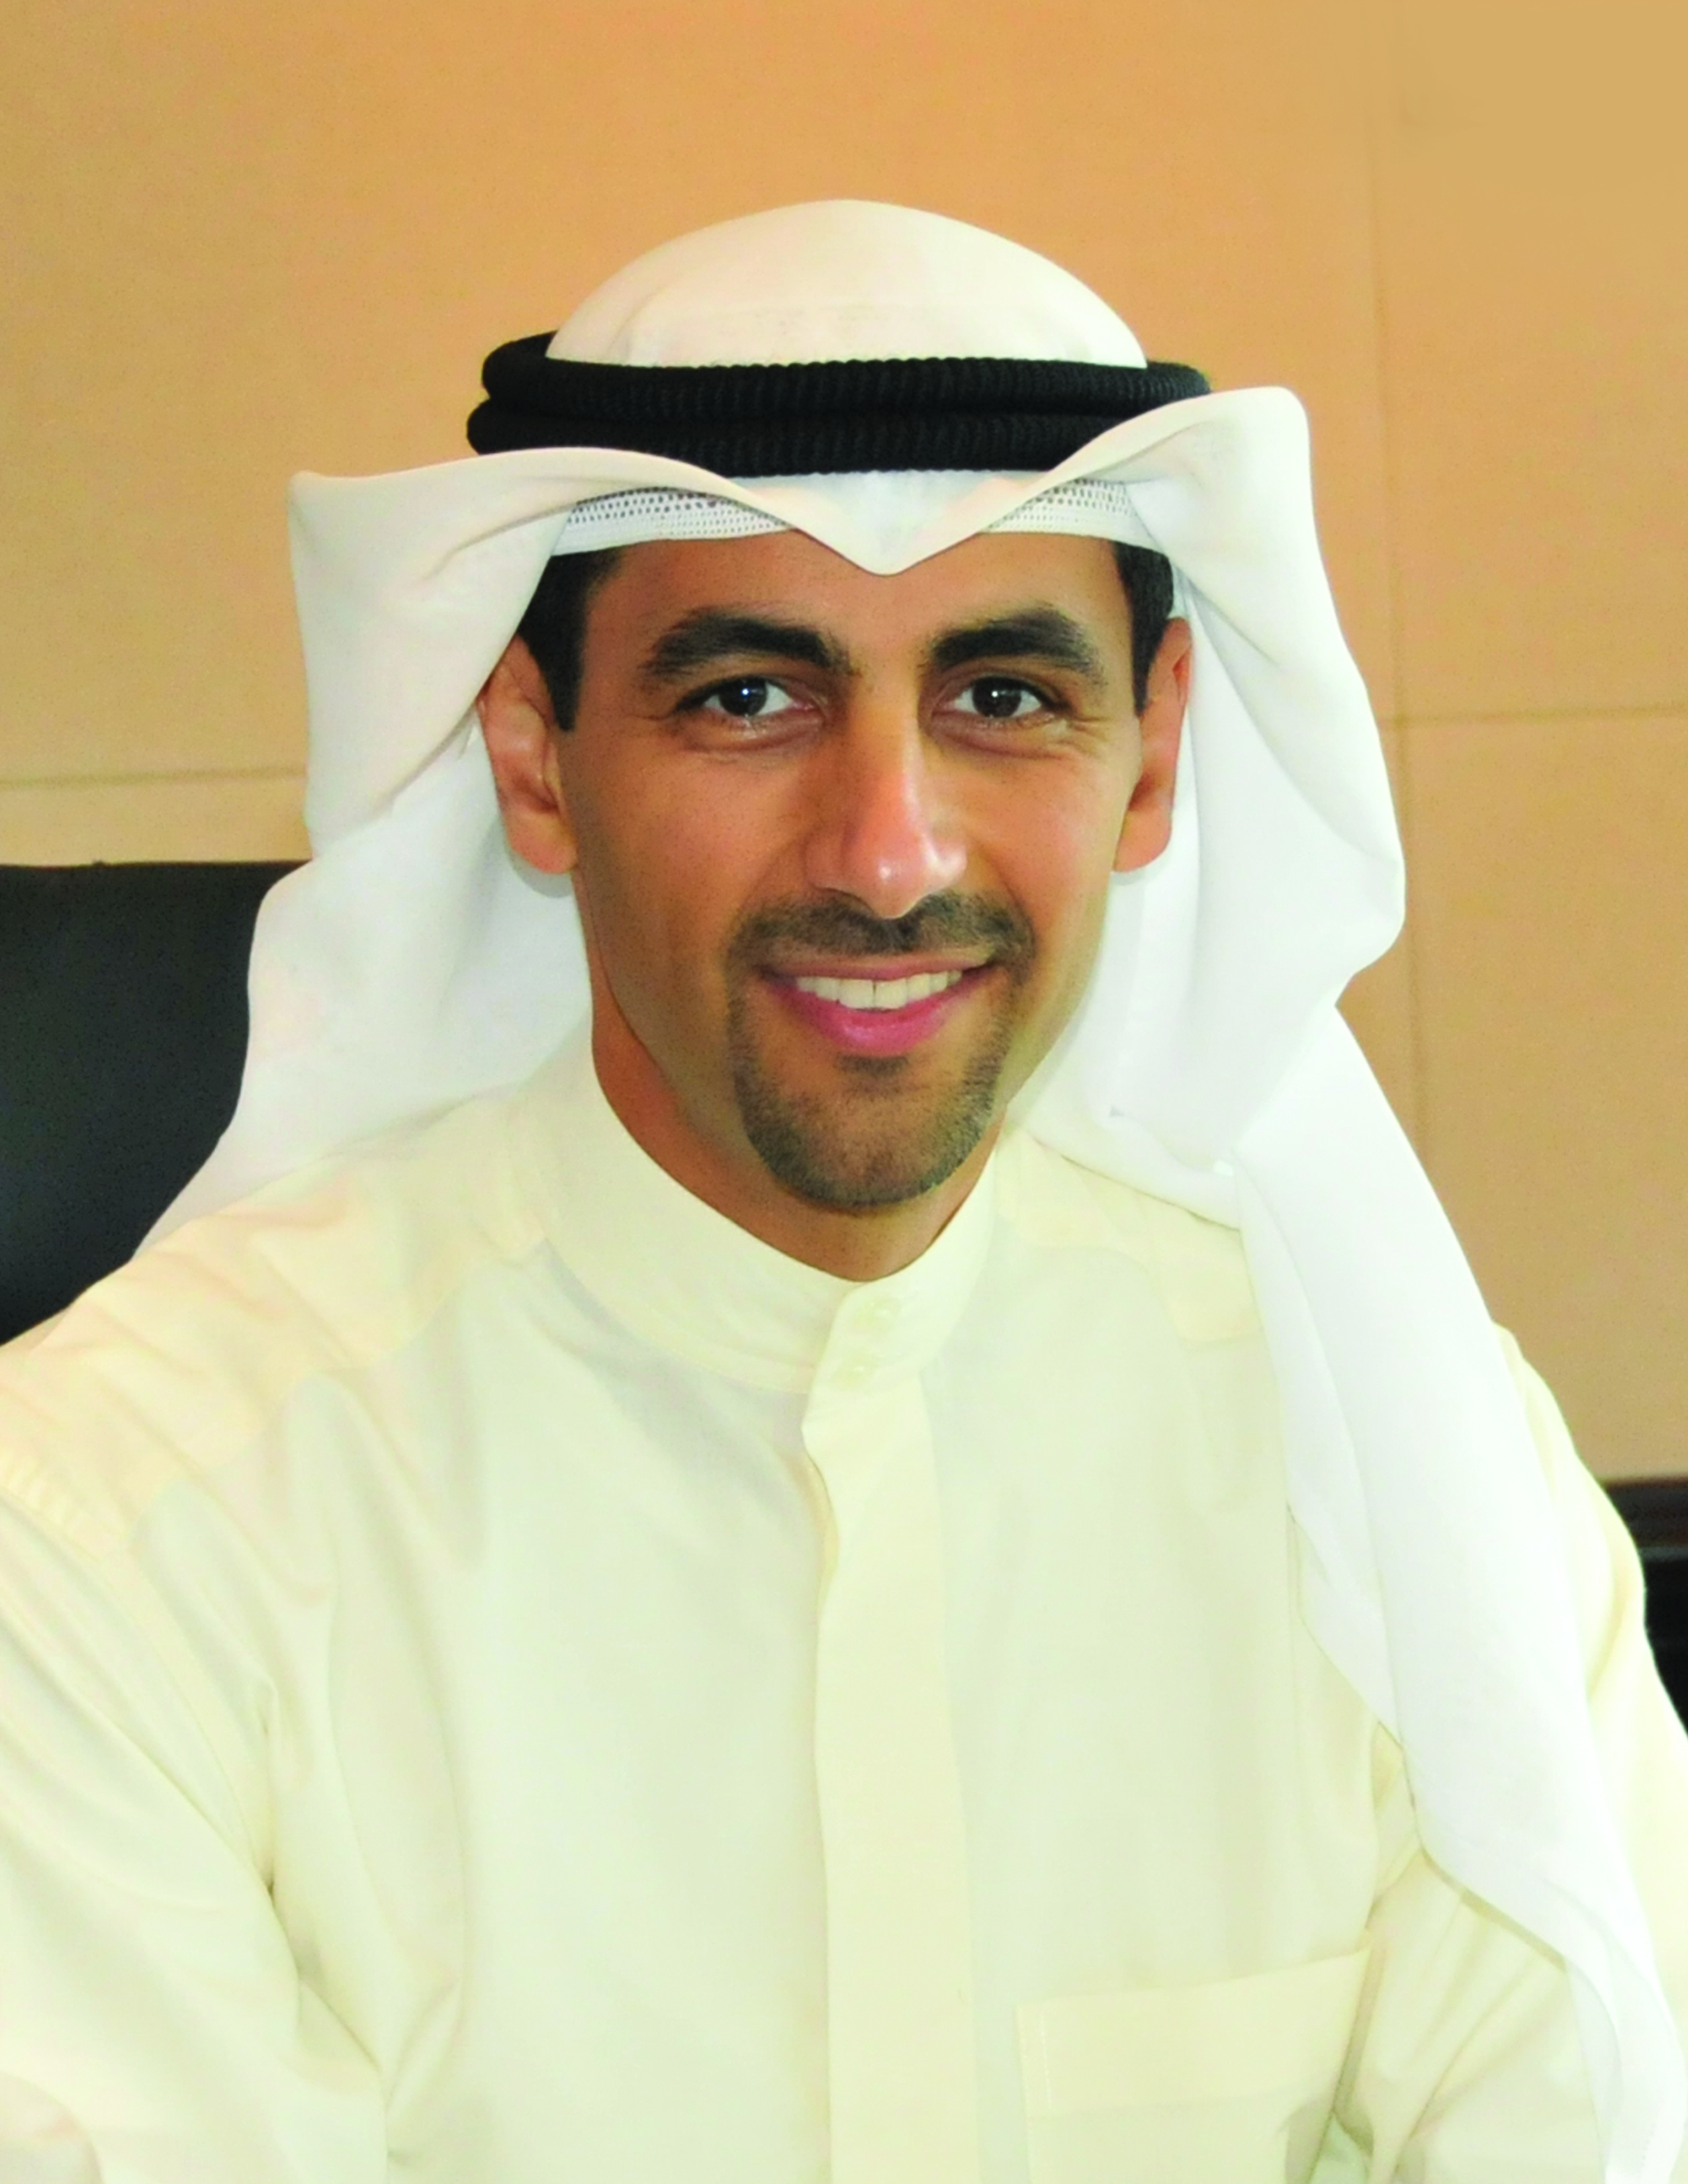 Kuwait Foreign Petroleum Exploration Company (KUFPEC) CEO Sheikh Nawaf Saud Al-Sabah